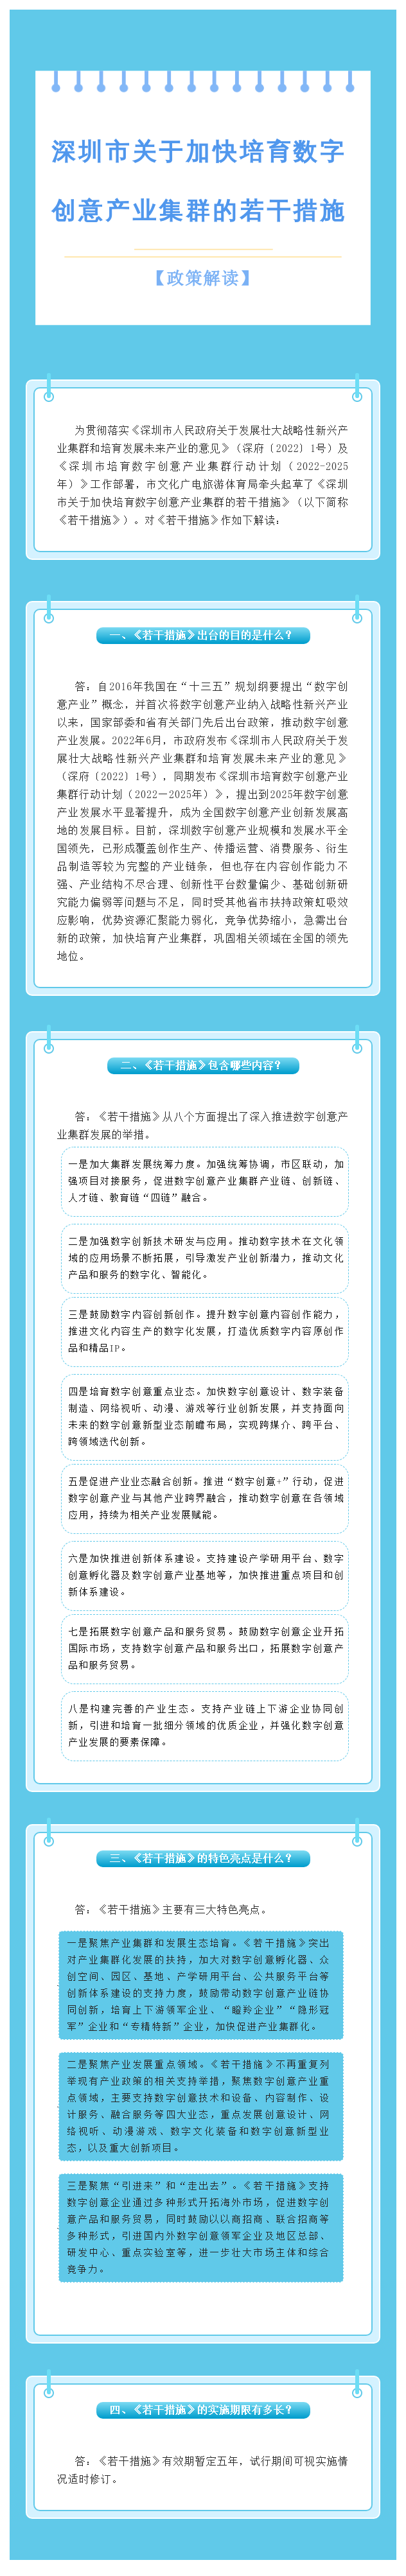 《深圳市关于加快培育数字创意产业集群的若干措施》政策解读